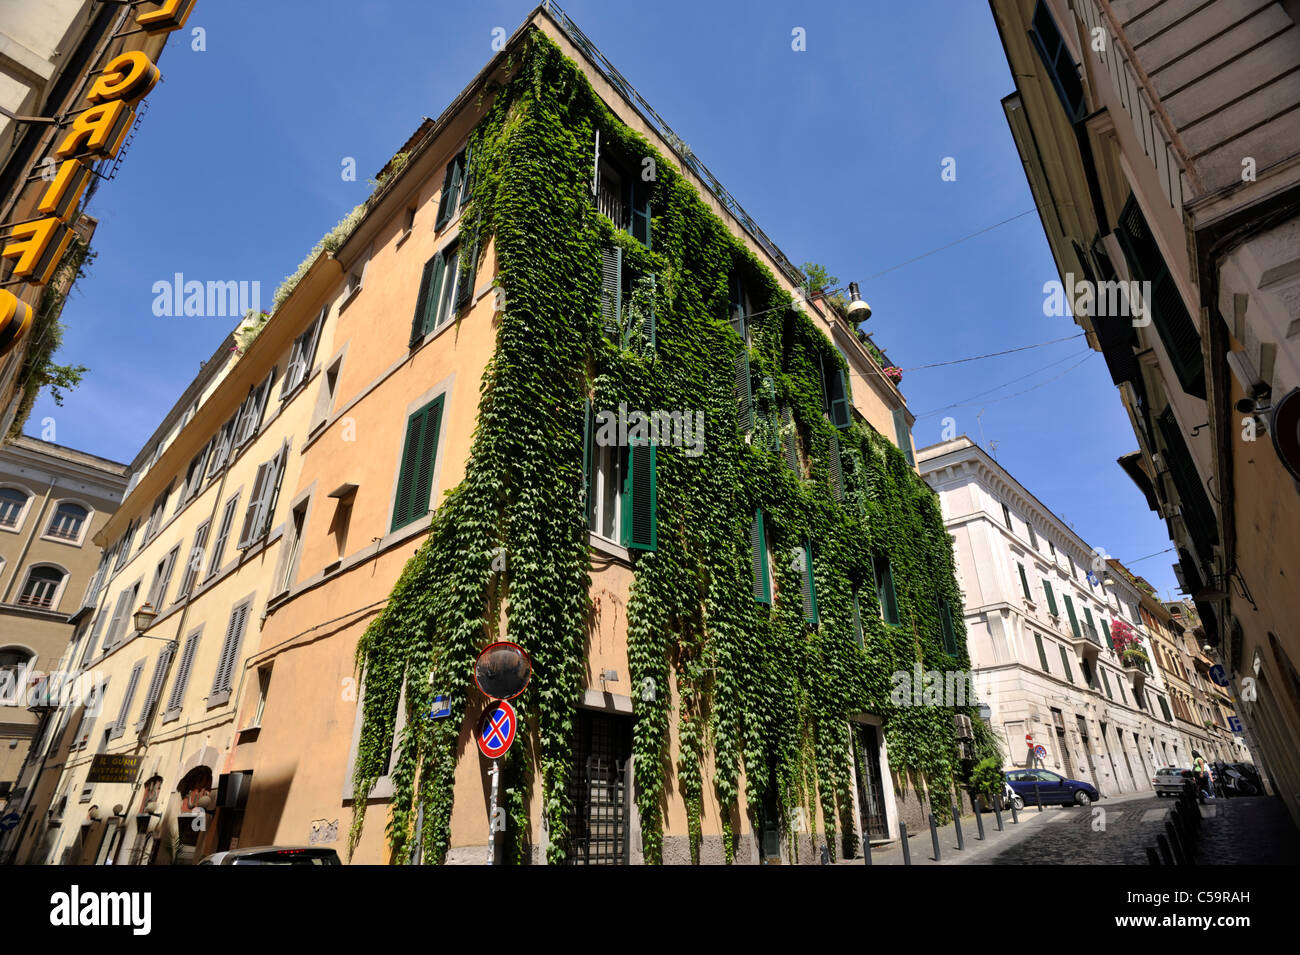 Italia, Roma, barrio de Monti, via del boschetto street Foto de stock